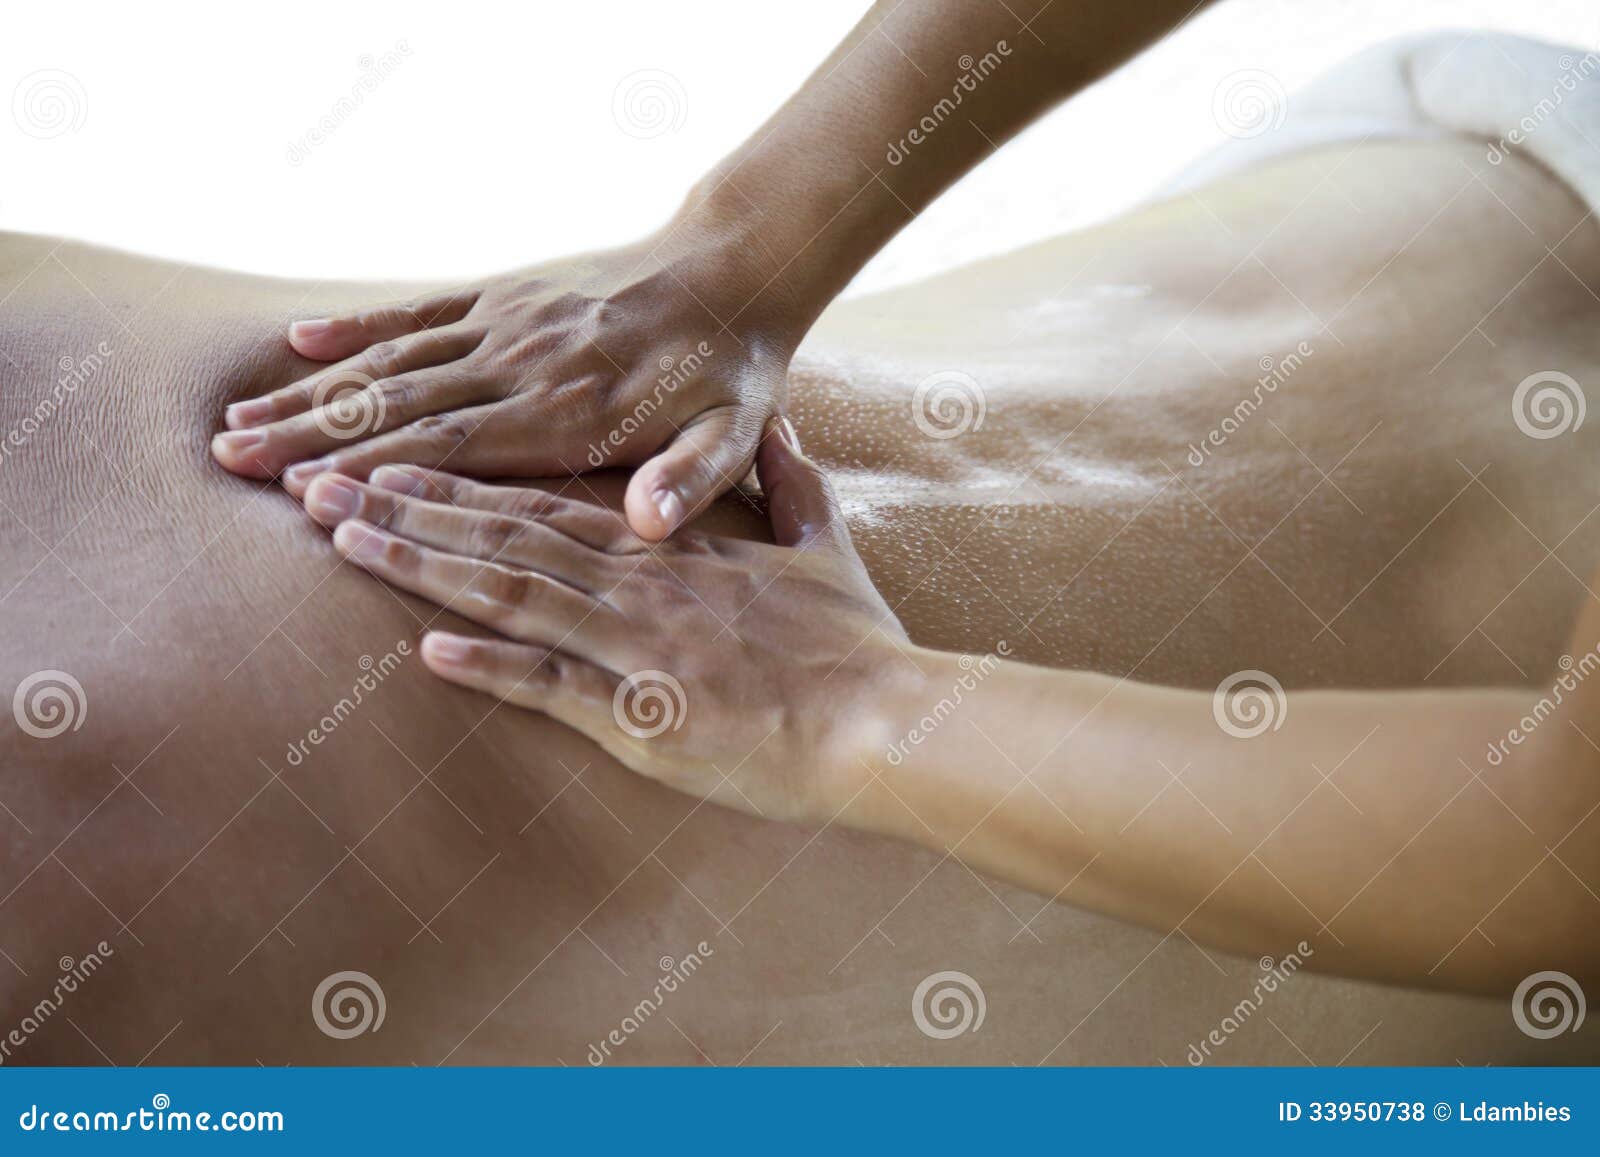 Back Massage Royalty Free Stock Photos Image 33950738